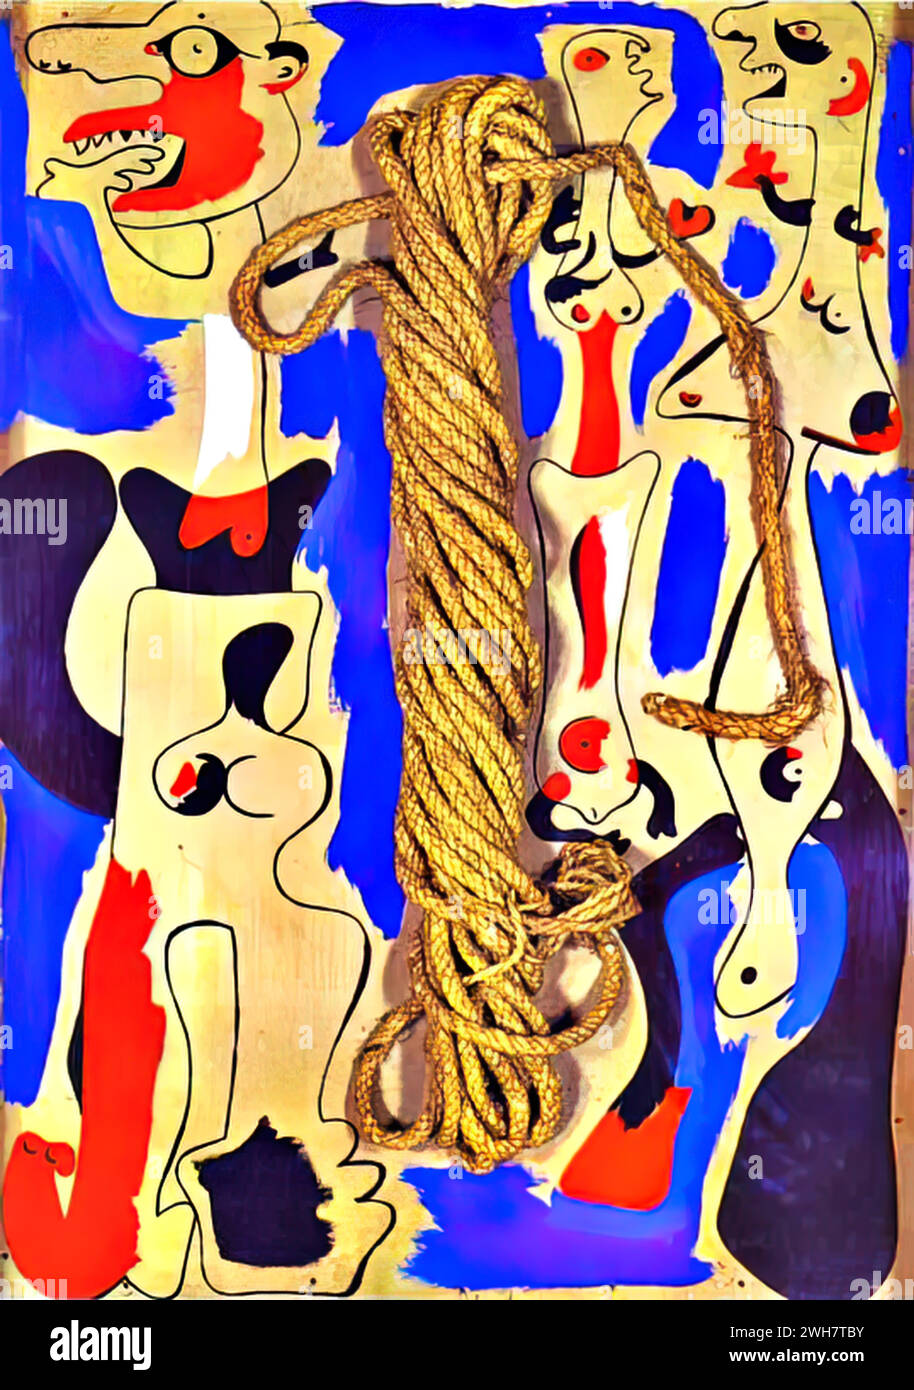 Corde et gens I, 1935 (huile sur toile) de l'artiste Miro, Joan (1893-1983) Espagnol. Illustration de Vecteur